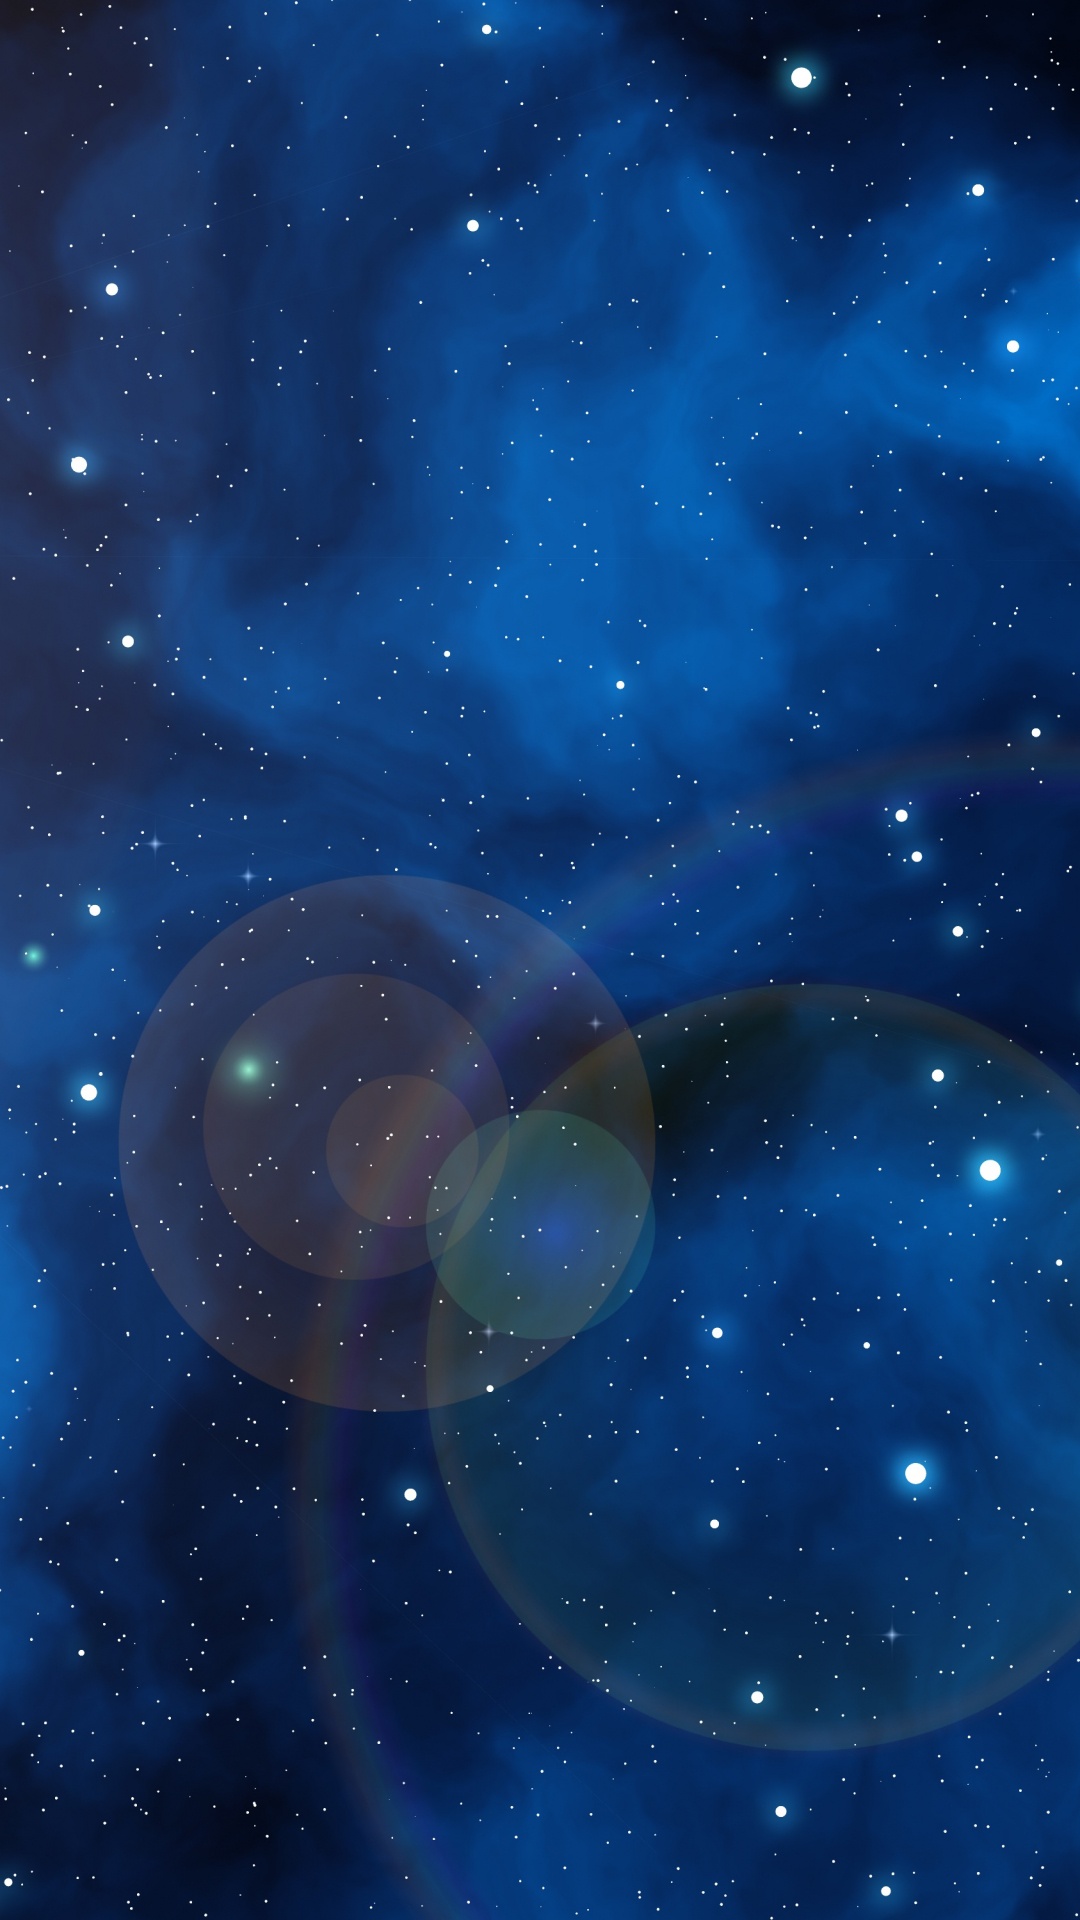 明星, 宇宙, 外层空间, 天文学对象, 气氛 壁纸 1080x1920 允许